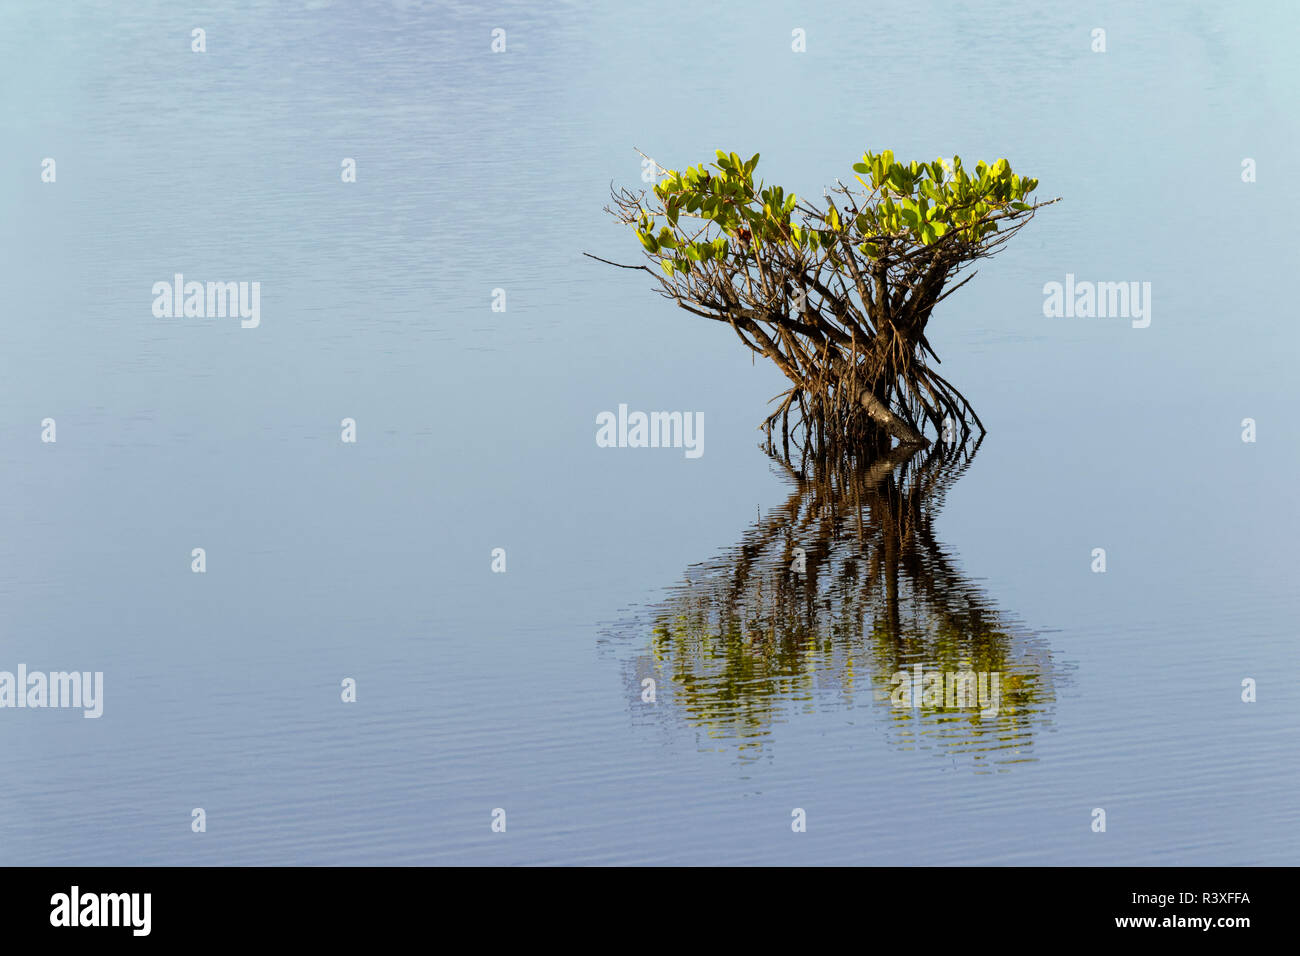 Red mangrove and reflection, Merritt National Wildlife Refuge, Florida, Rhizophora mangle Stock Photo